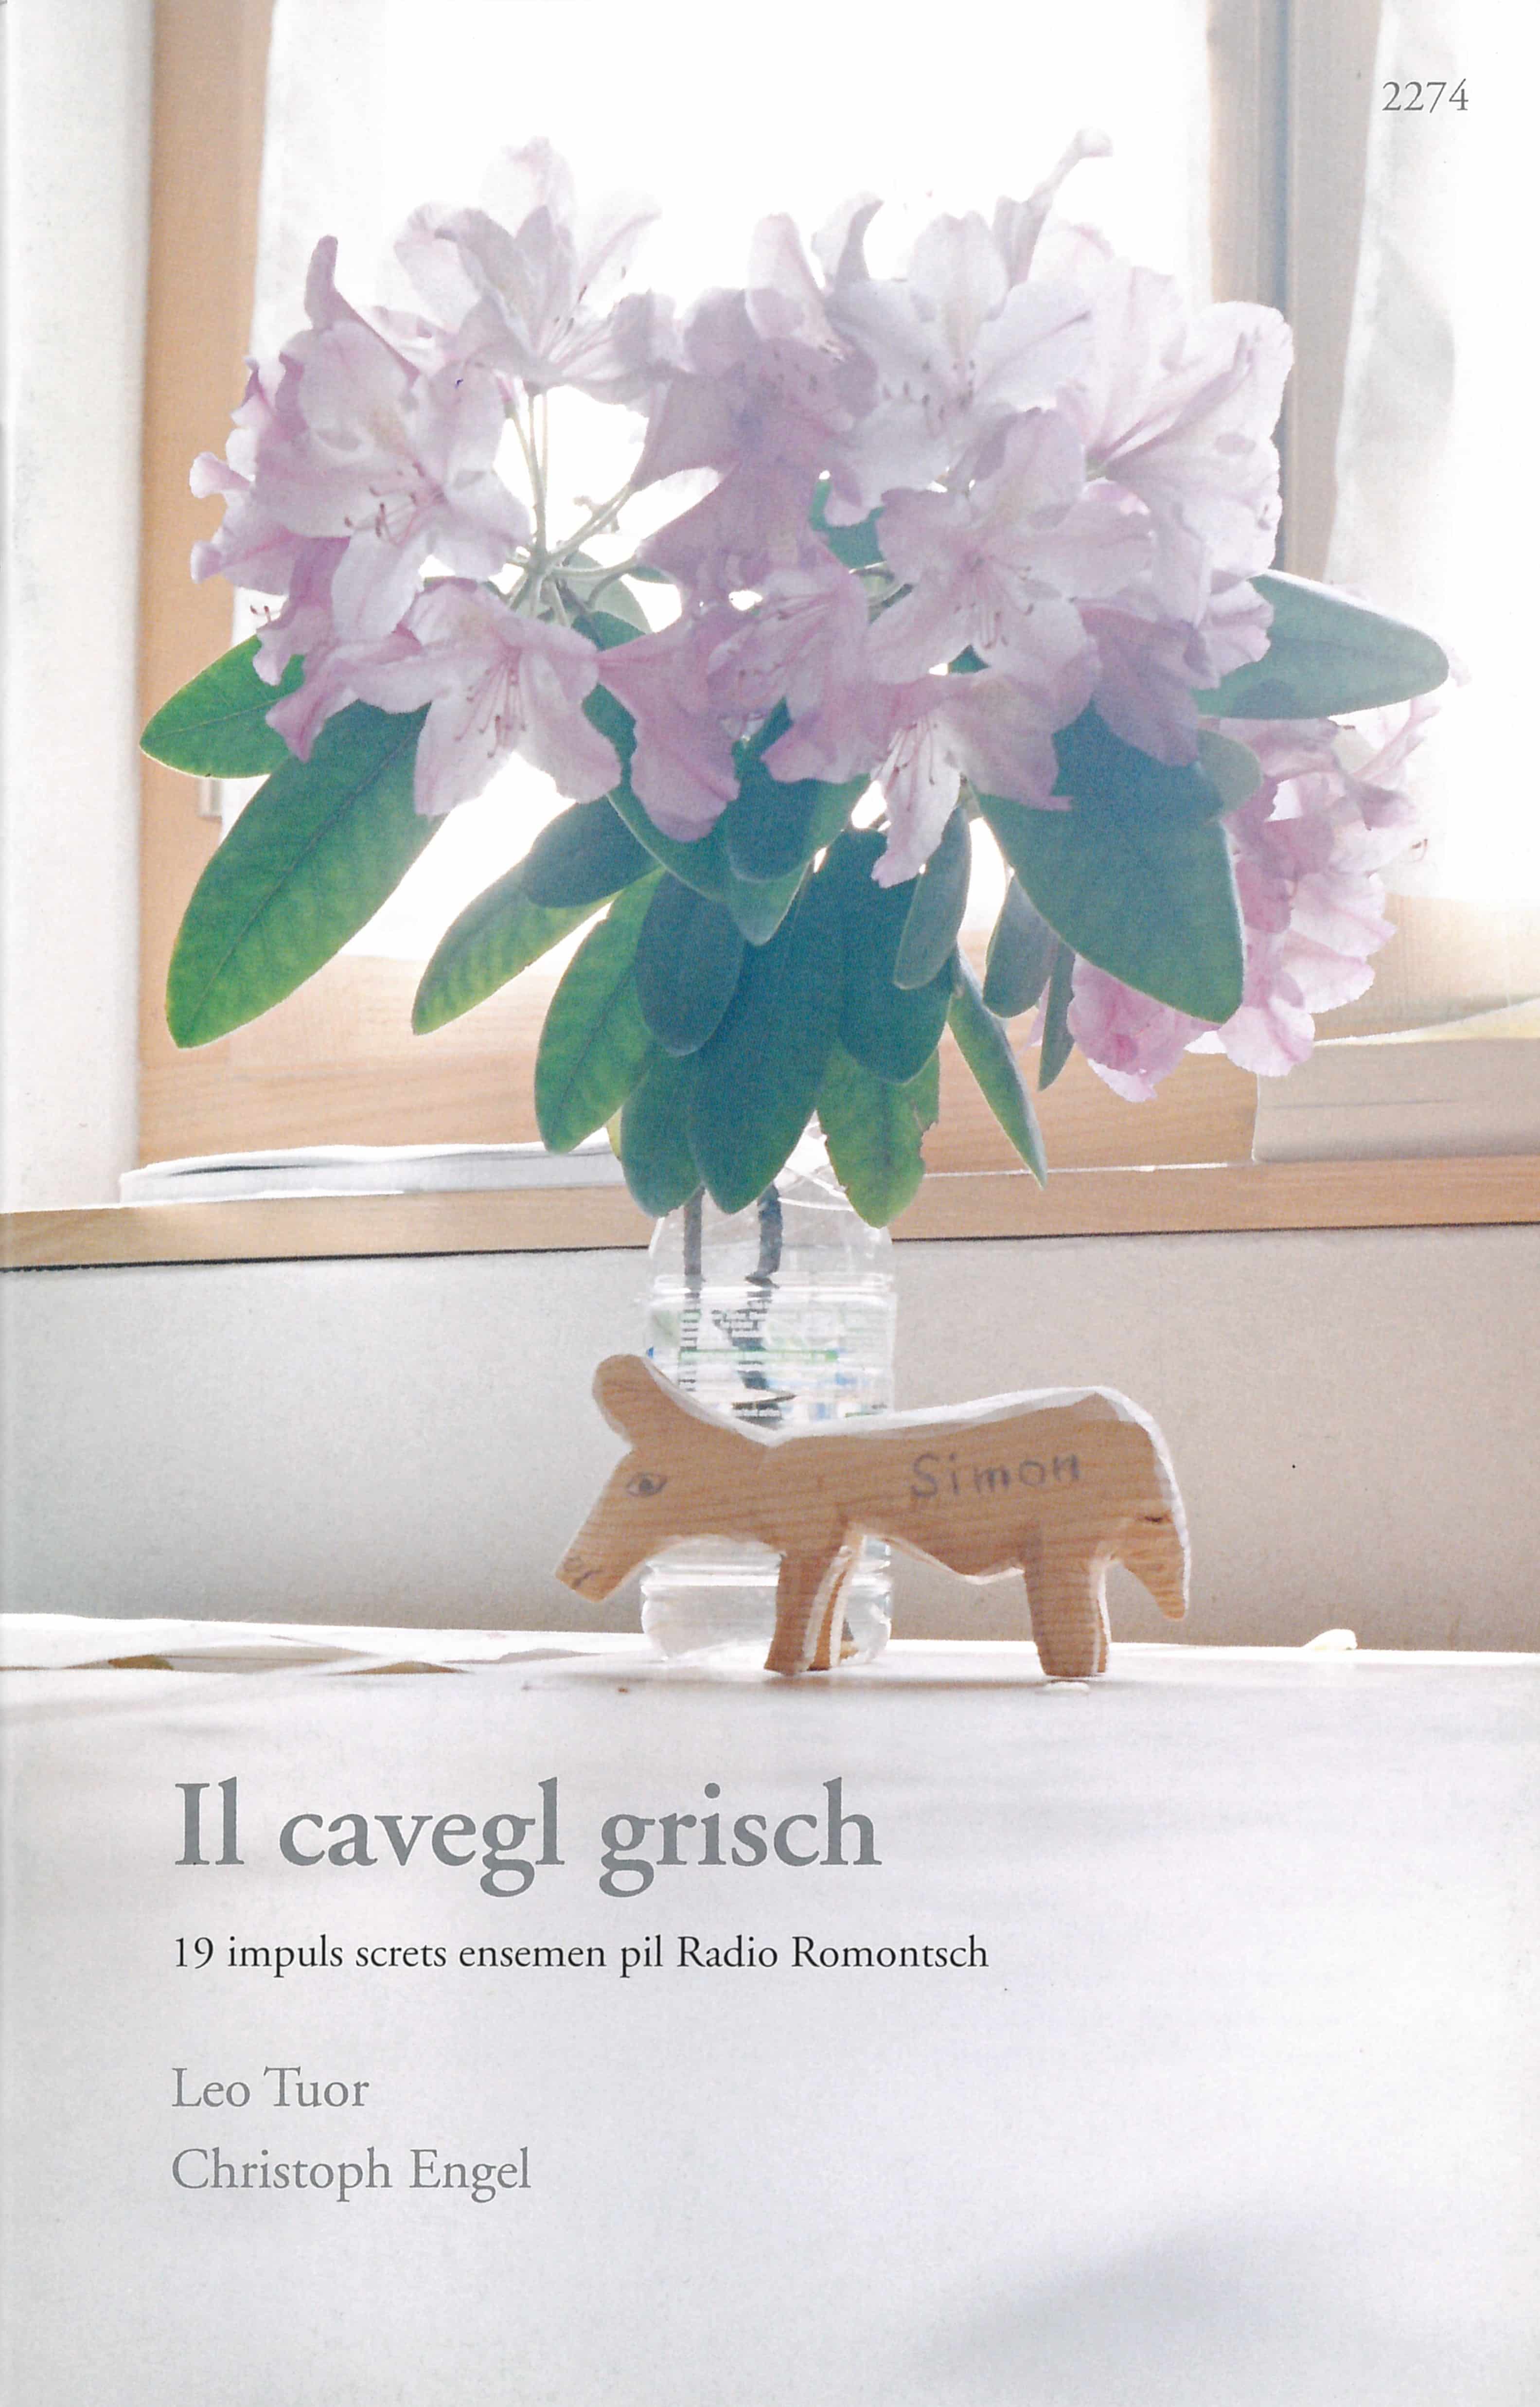 Il cavegl grisch, ein Buch von Leo Tuor, Fotos von Christoph Engel, SJW Verlag, Sursilvan, Schweiz, Radio Romontsch